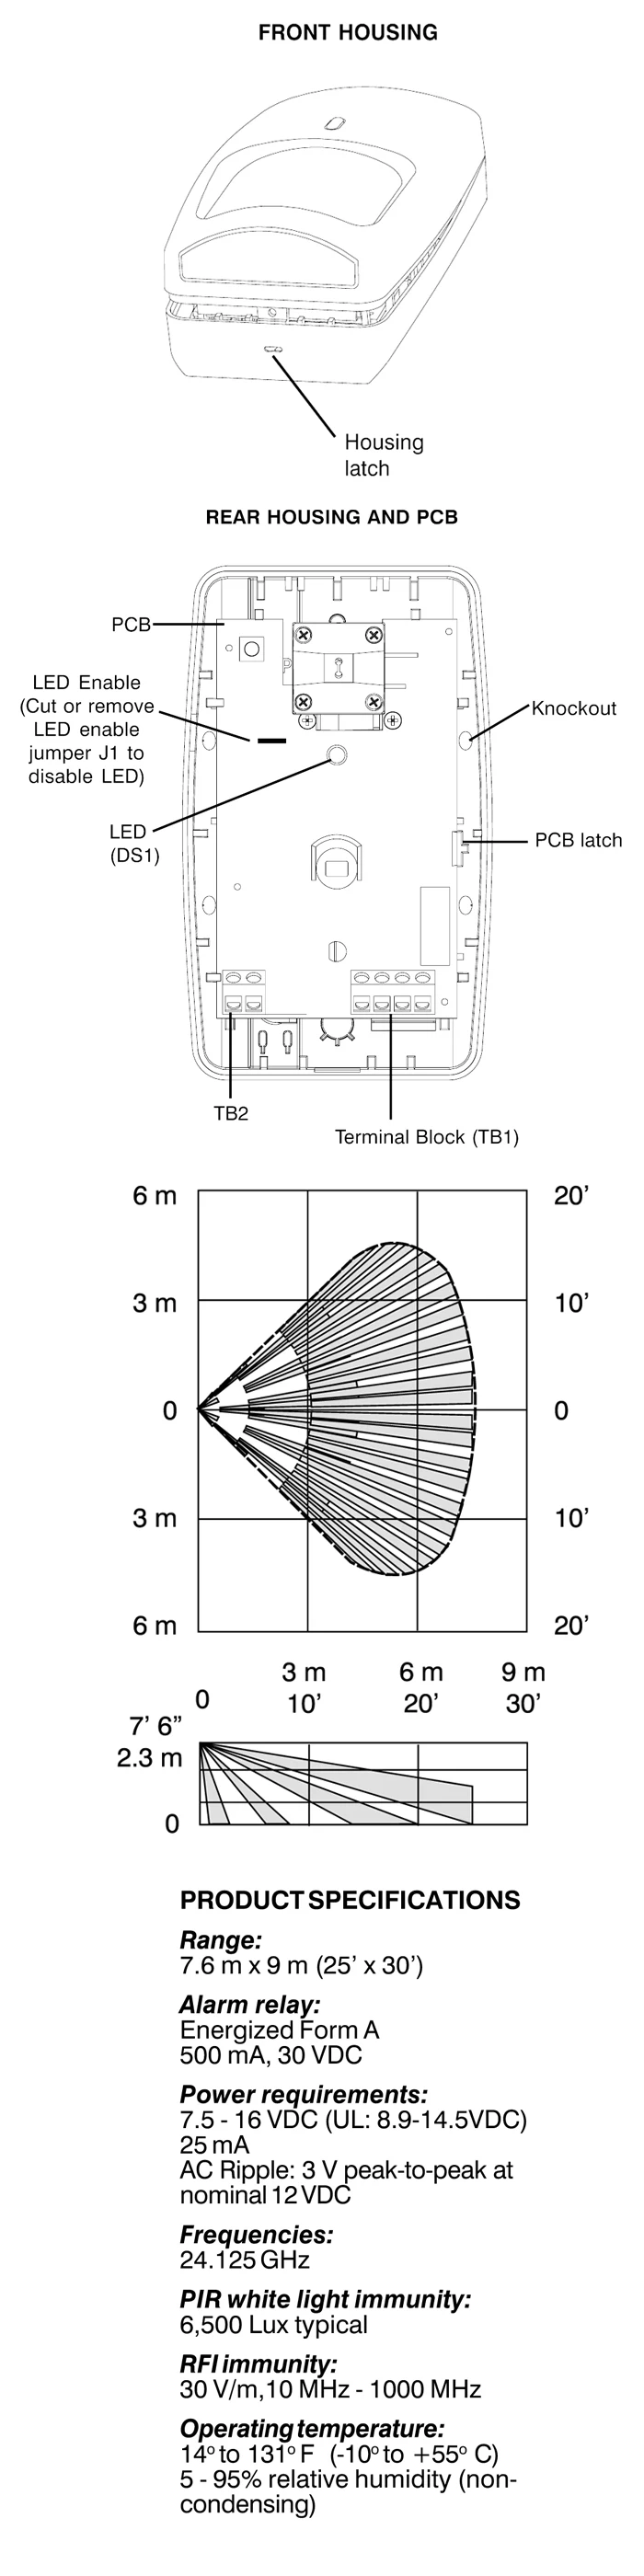 1 шт.) настенный инфракрасный детектор Honeywell DT7225 датчик движения микроволновка внутри ПЭТ помехи с держателем реле сигнала